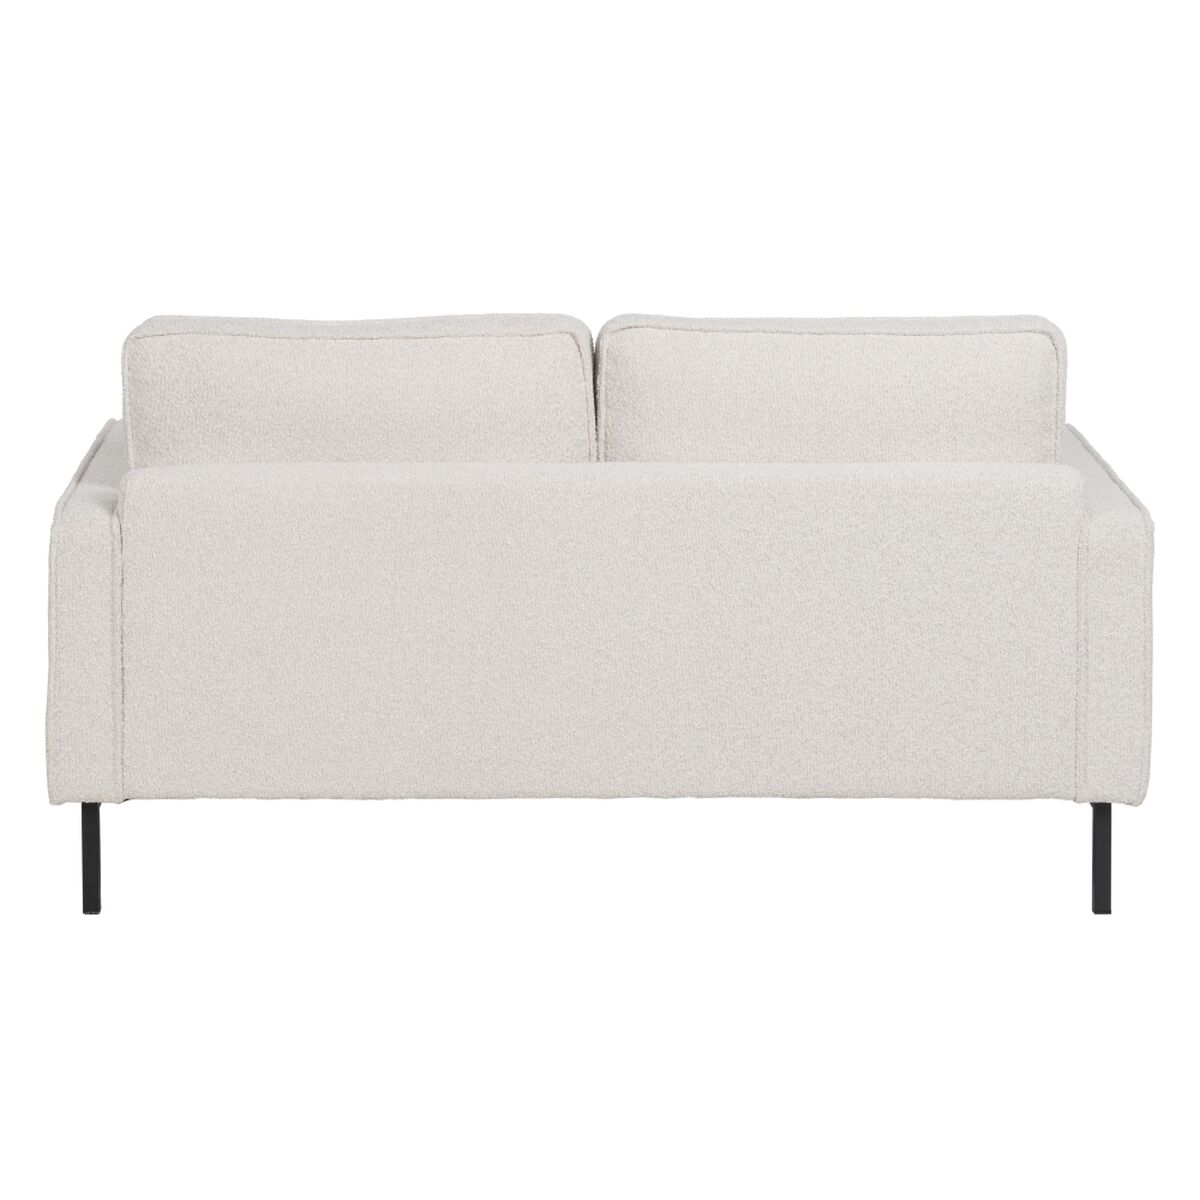 Sofa 163 x 87 x 90 cm Tkanina syntetyczna Beżowy Metal